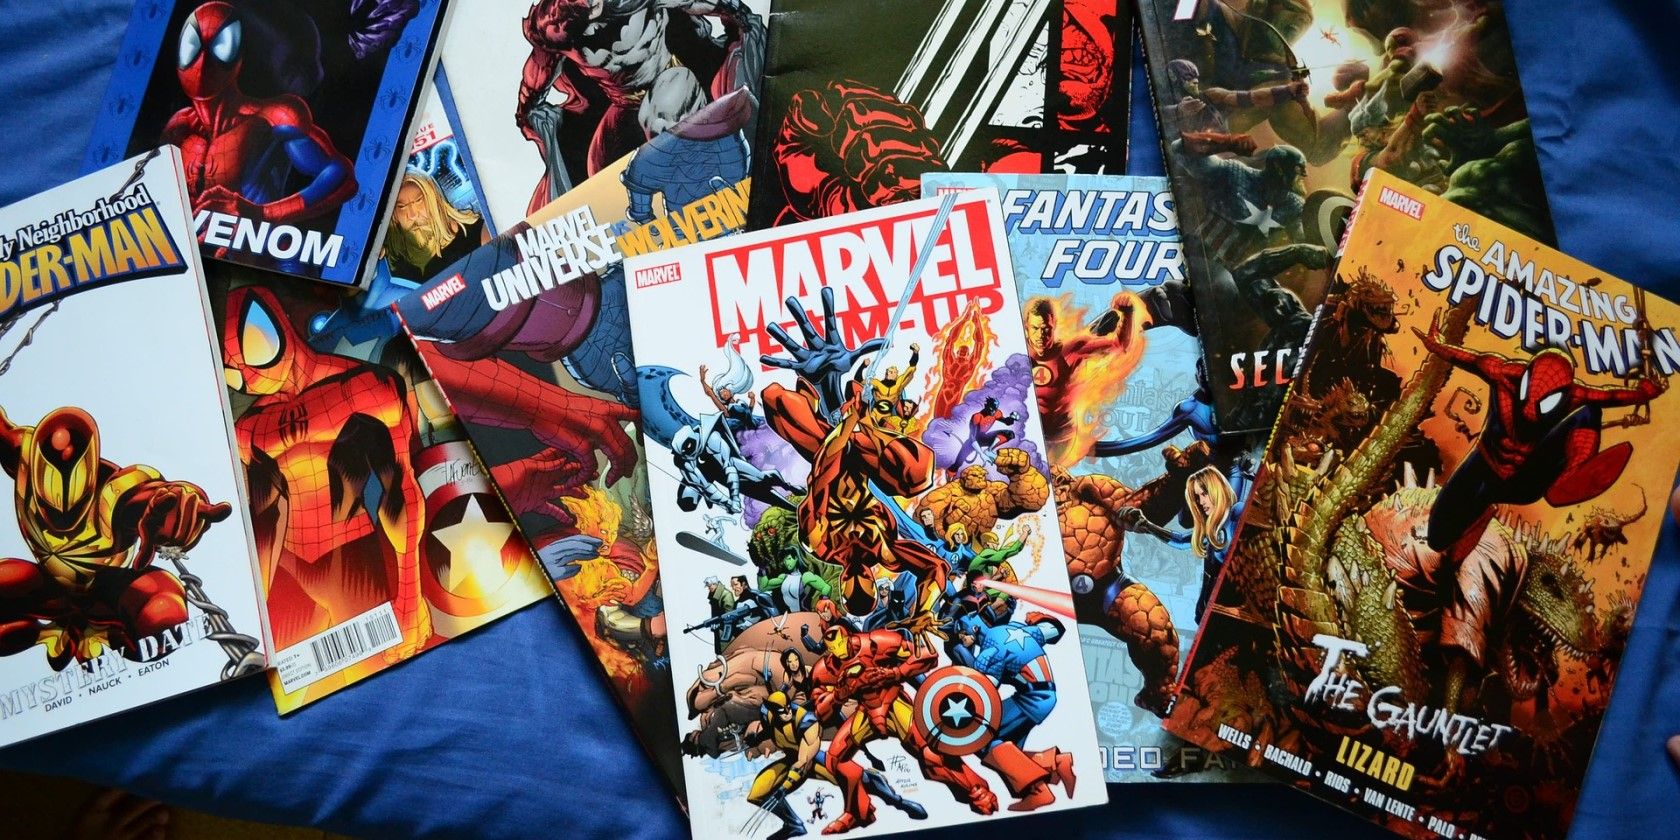 A pile of comic books